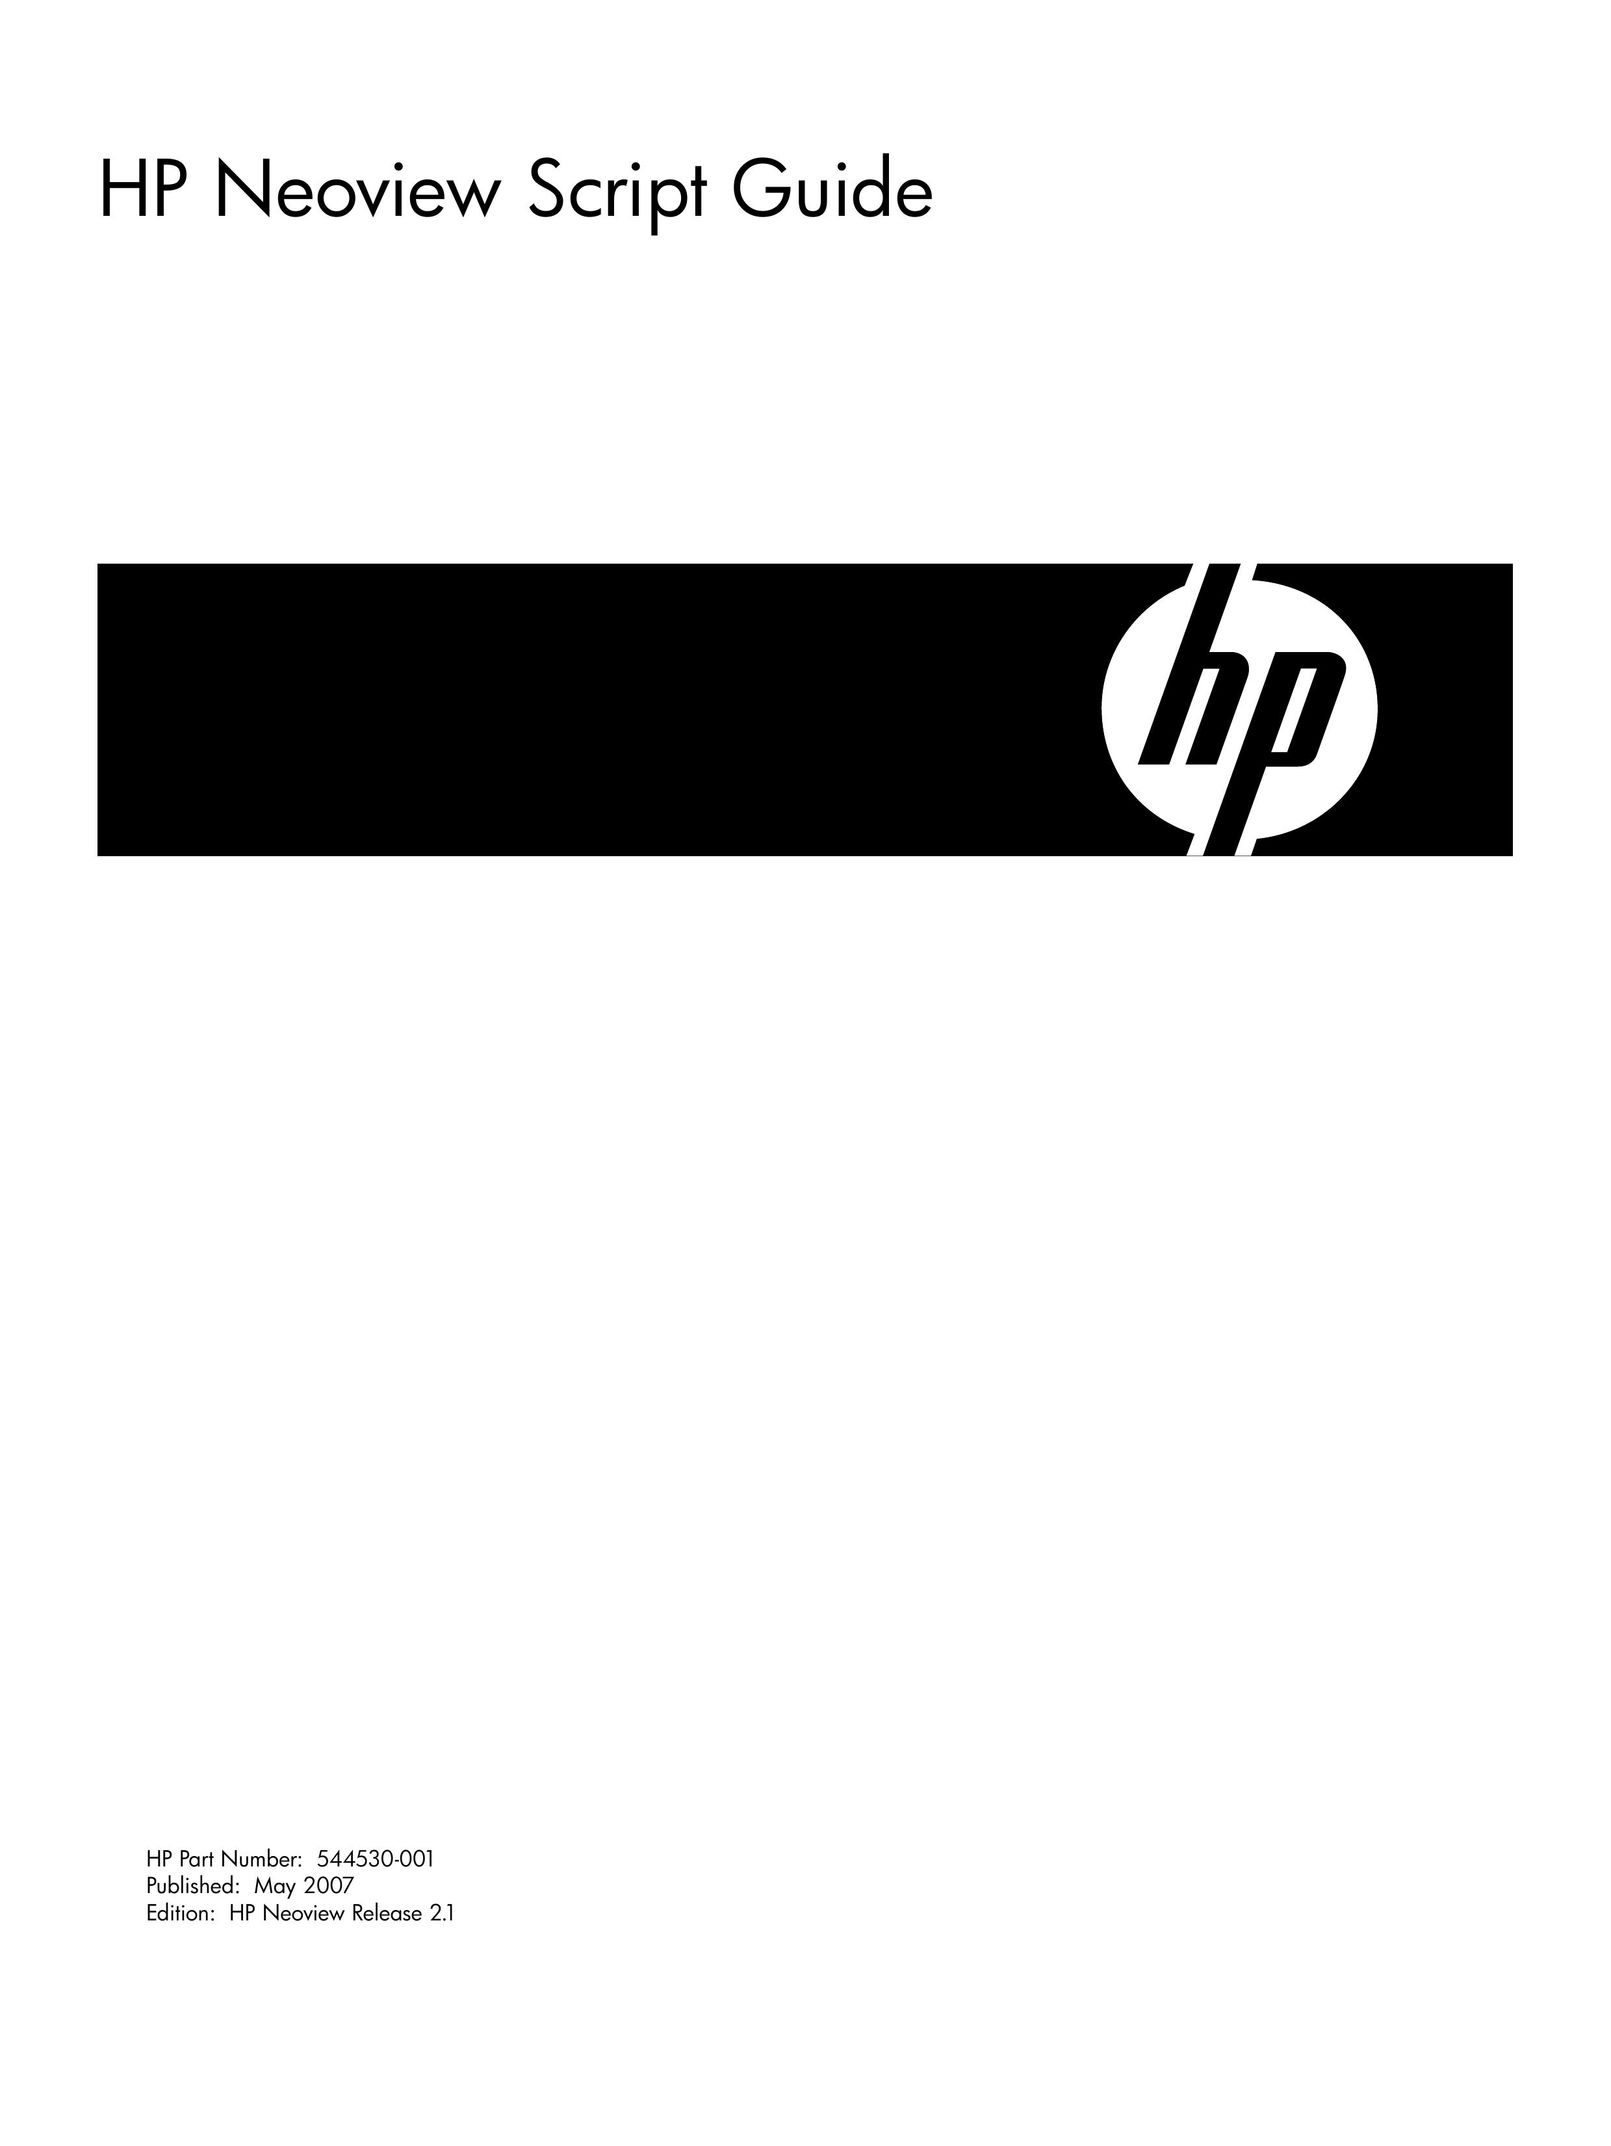 HP (Hewlett-Packard) 544530-001 Computer Accessories User Manual